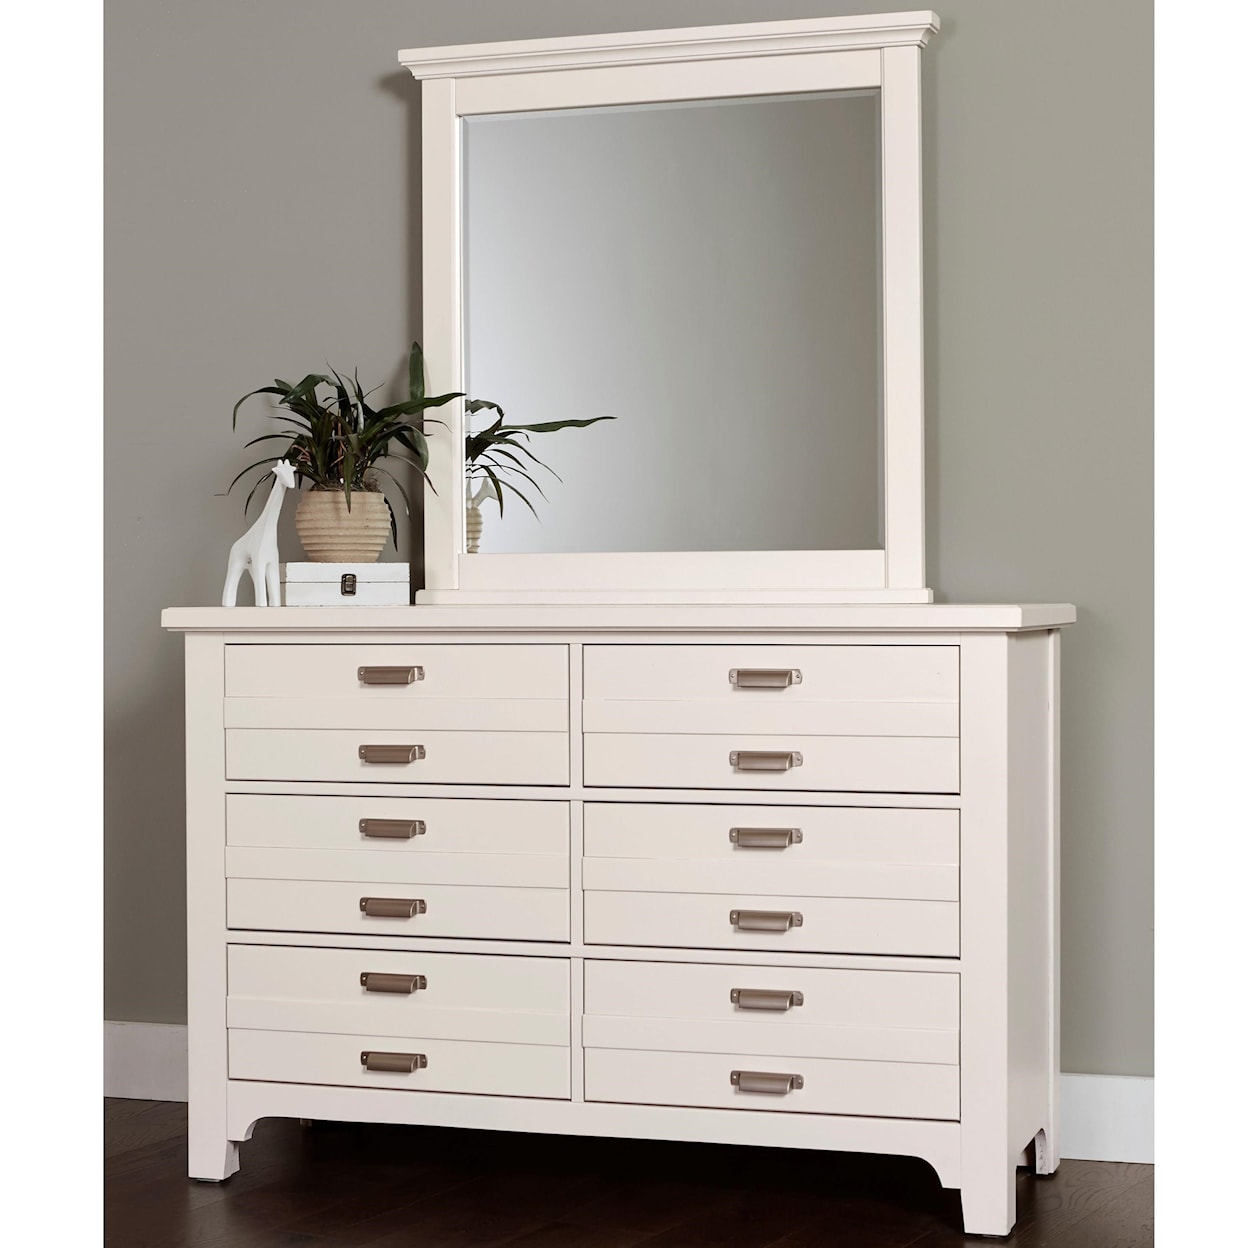 Laurel Mercantile Co. Bungalow Double Dresser and Landscape Mirror